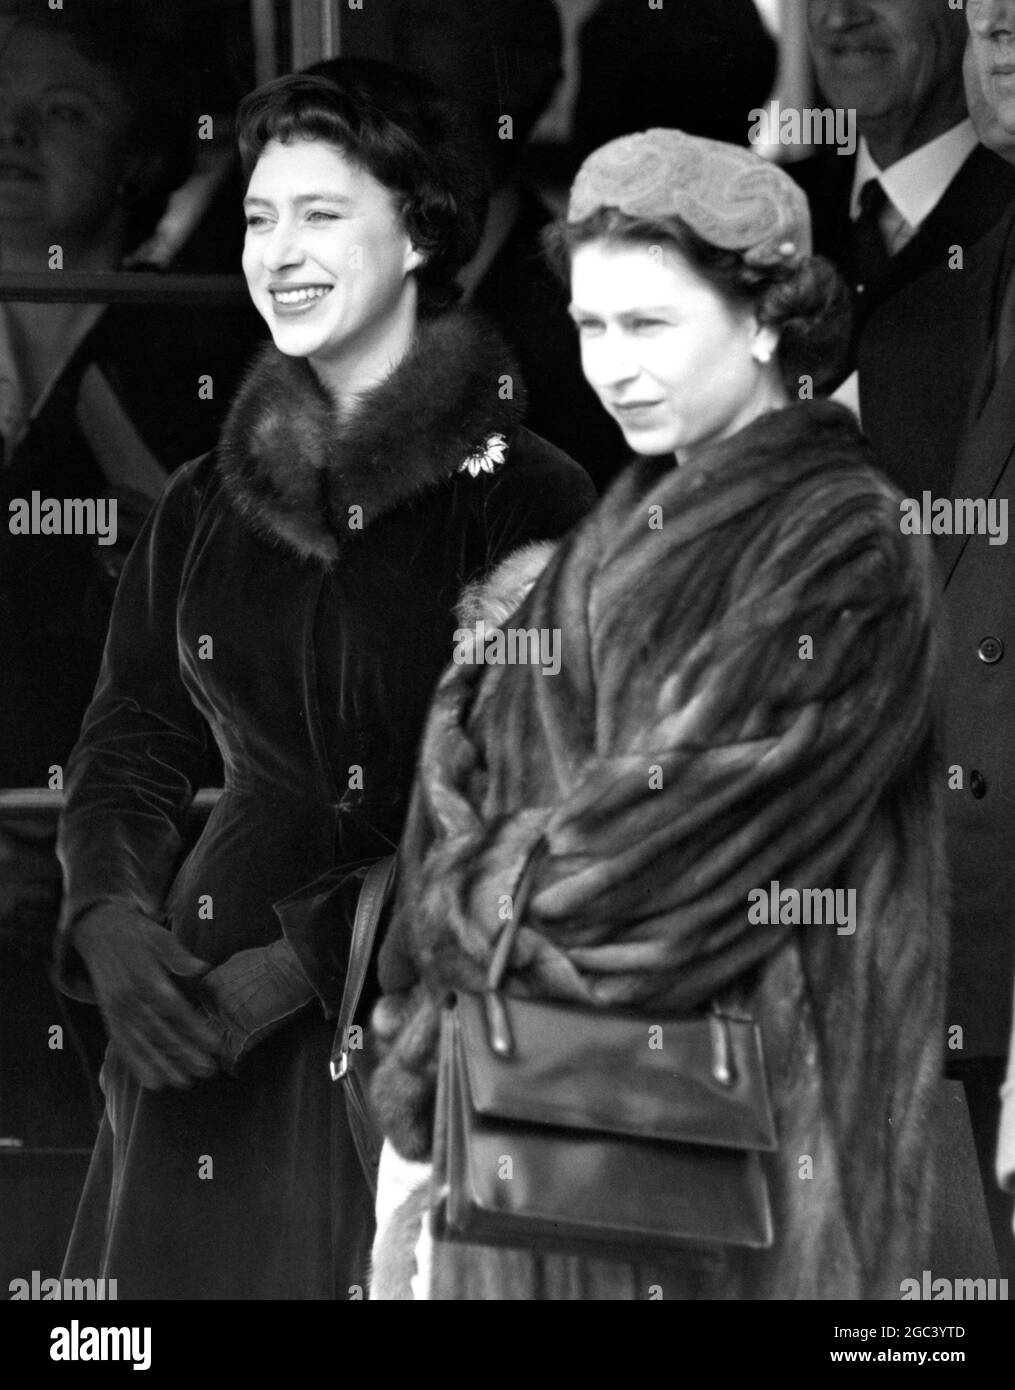 Wir warten darauf, Königin Elizabeth, die Königin Mutter, von ihrer Commonwealth-Tour zu treffen. Foto-Shows: Königliche Sisster warten darauf, ihre Mutter am Londoner Flughafen zu begrüßen. Ihre Königliche Hoheit Prinzessin Margaret, die sich offensichtlich sehr über den Gedanken an die Rückkehr ihrer Mutter aufgeregt hat, steht neben der Königin HM am 13. März 1958 Stockfoto